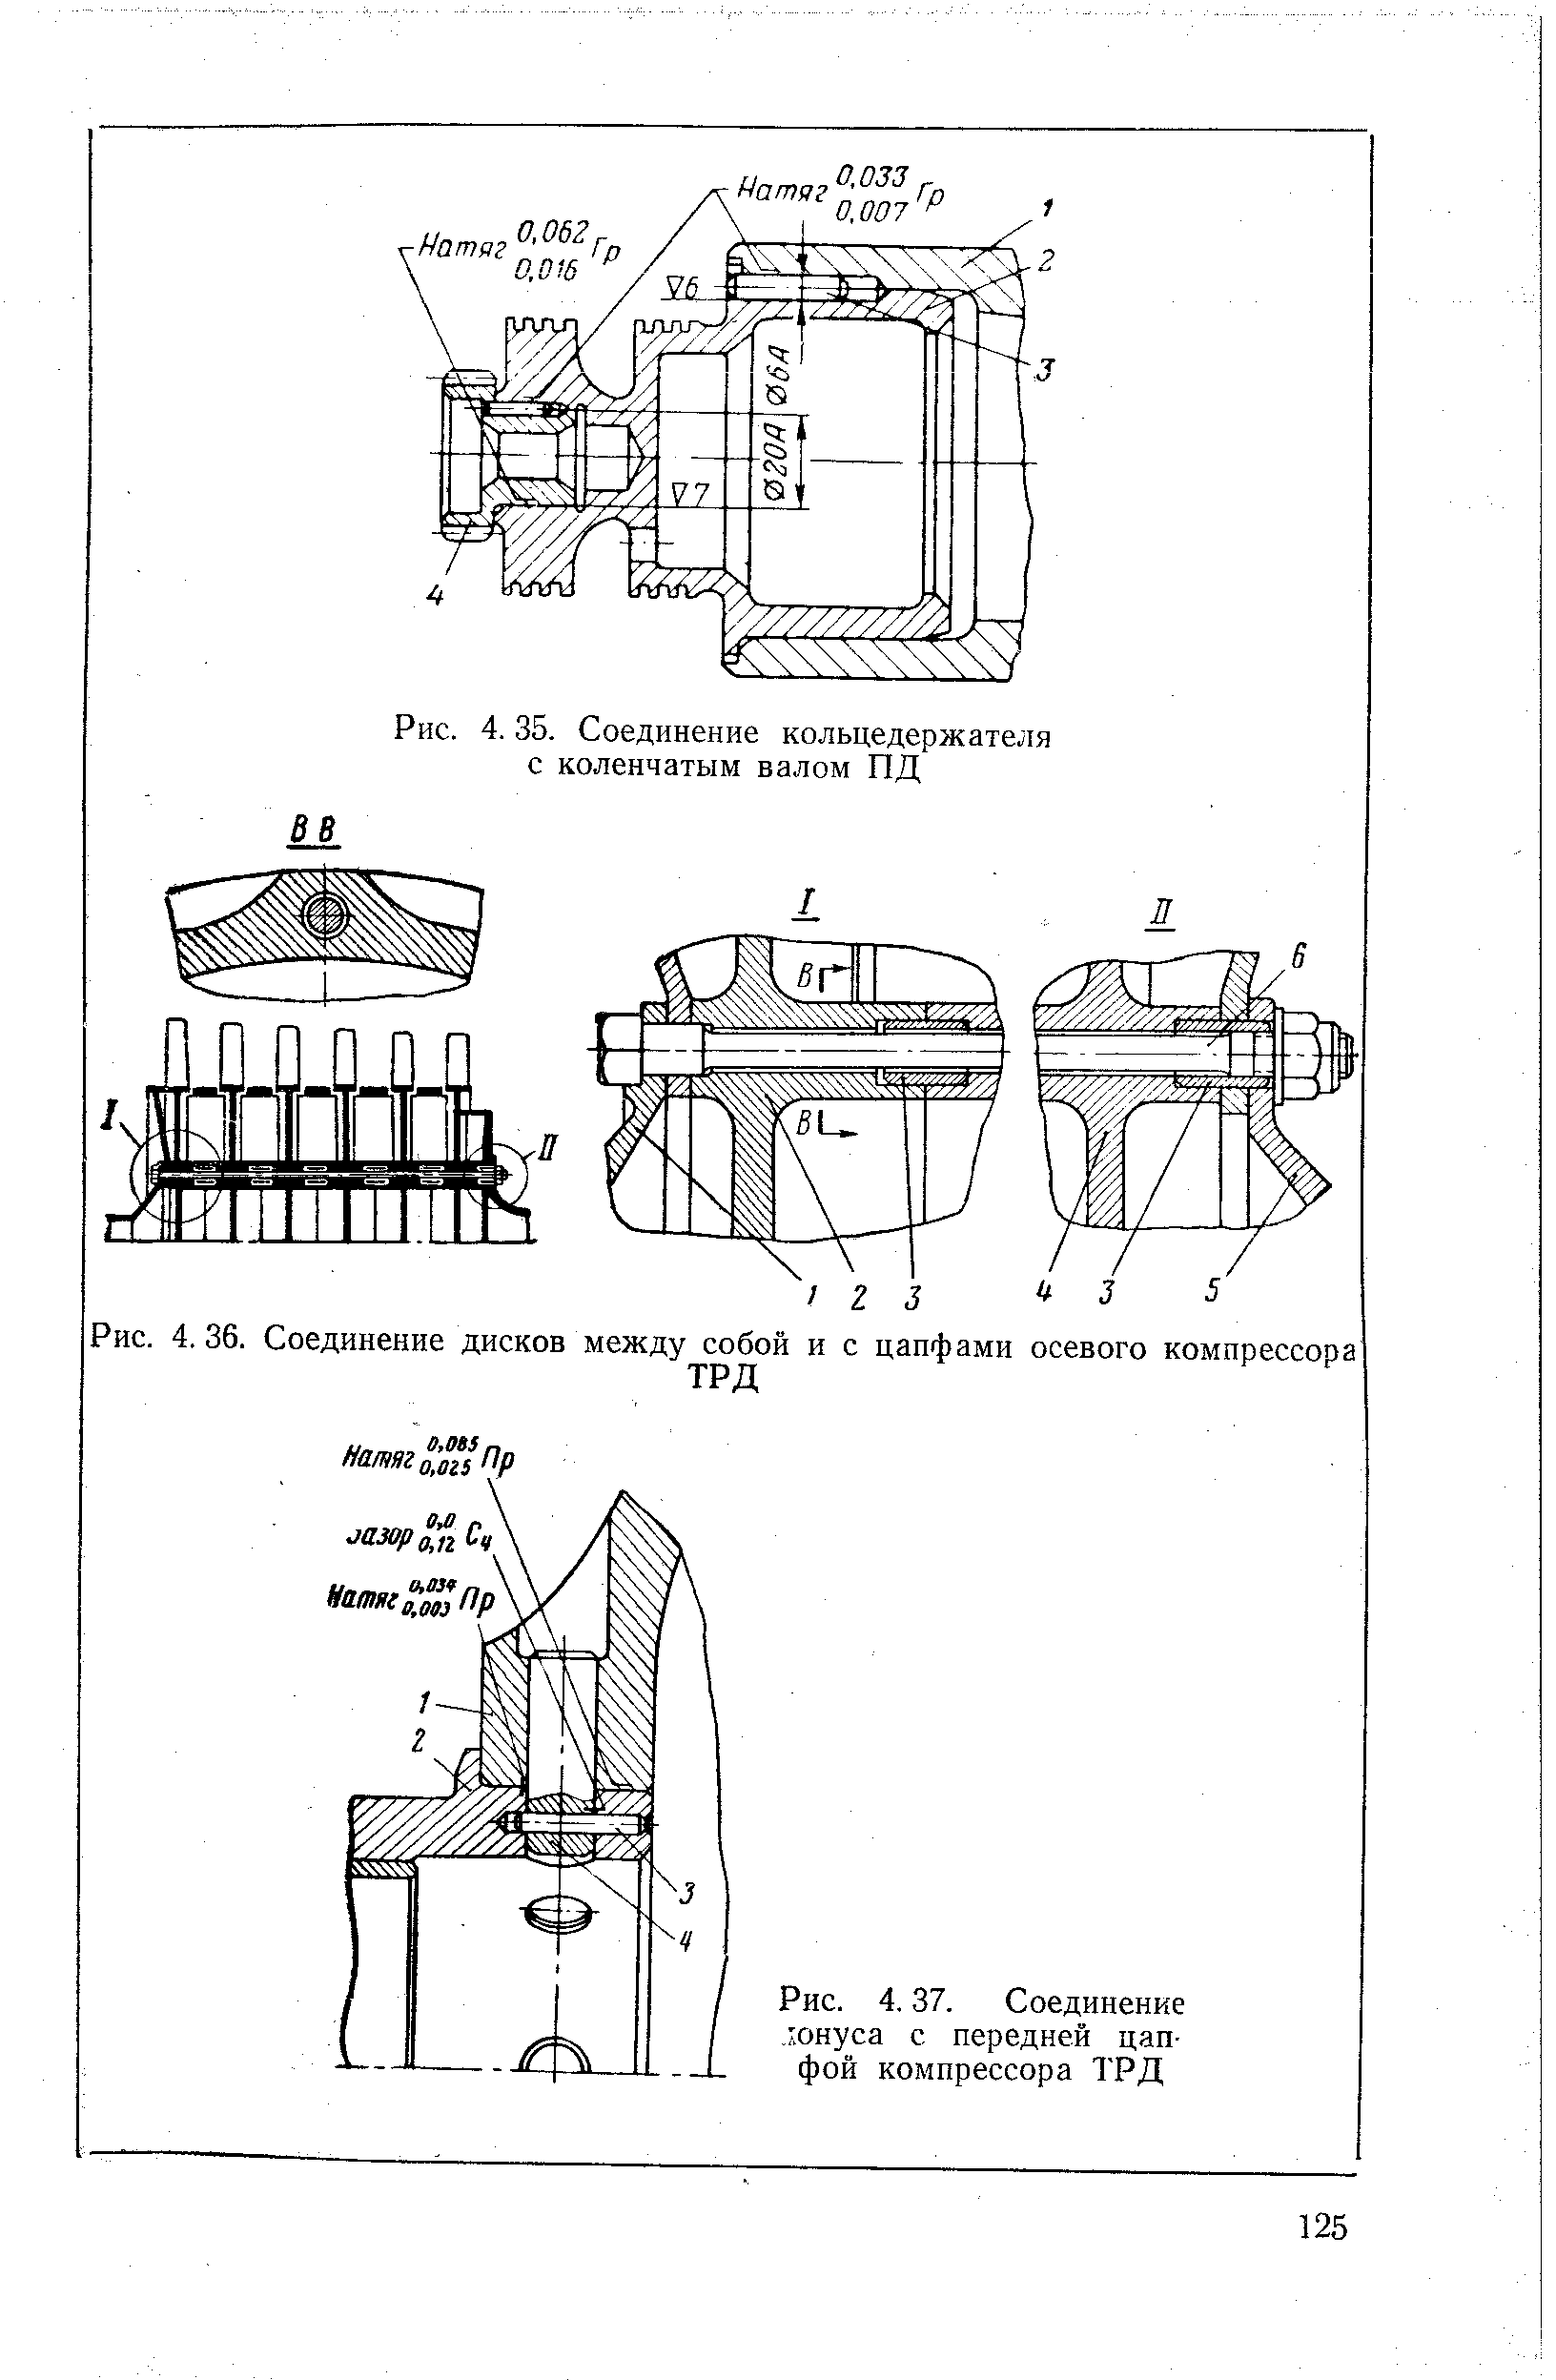 Рис. 4.37. Соединение юнуса с передней цапфой компрессора ТРД
